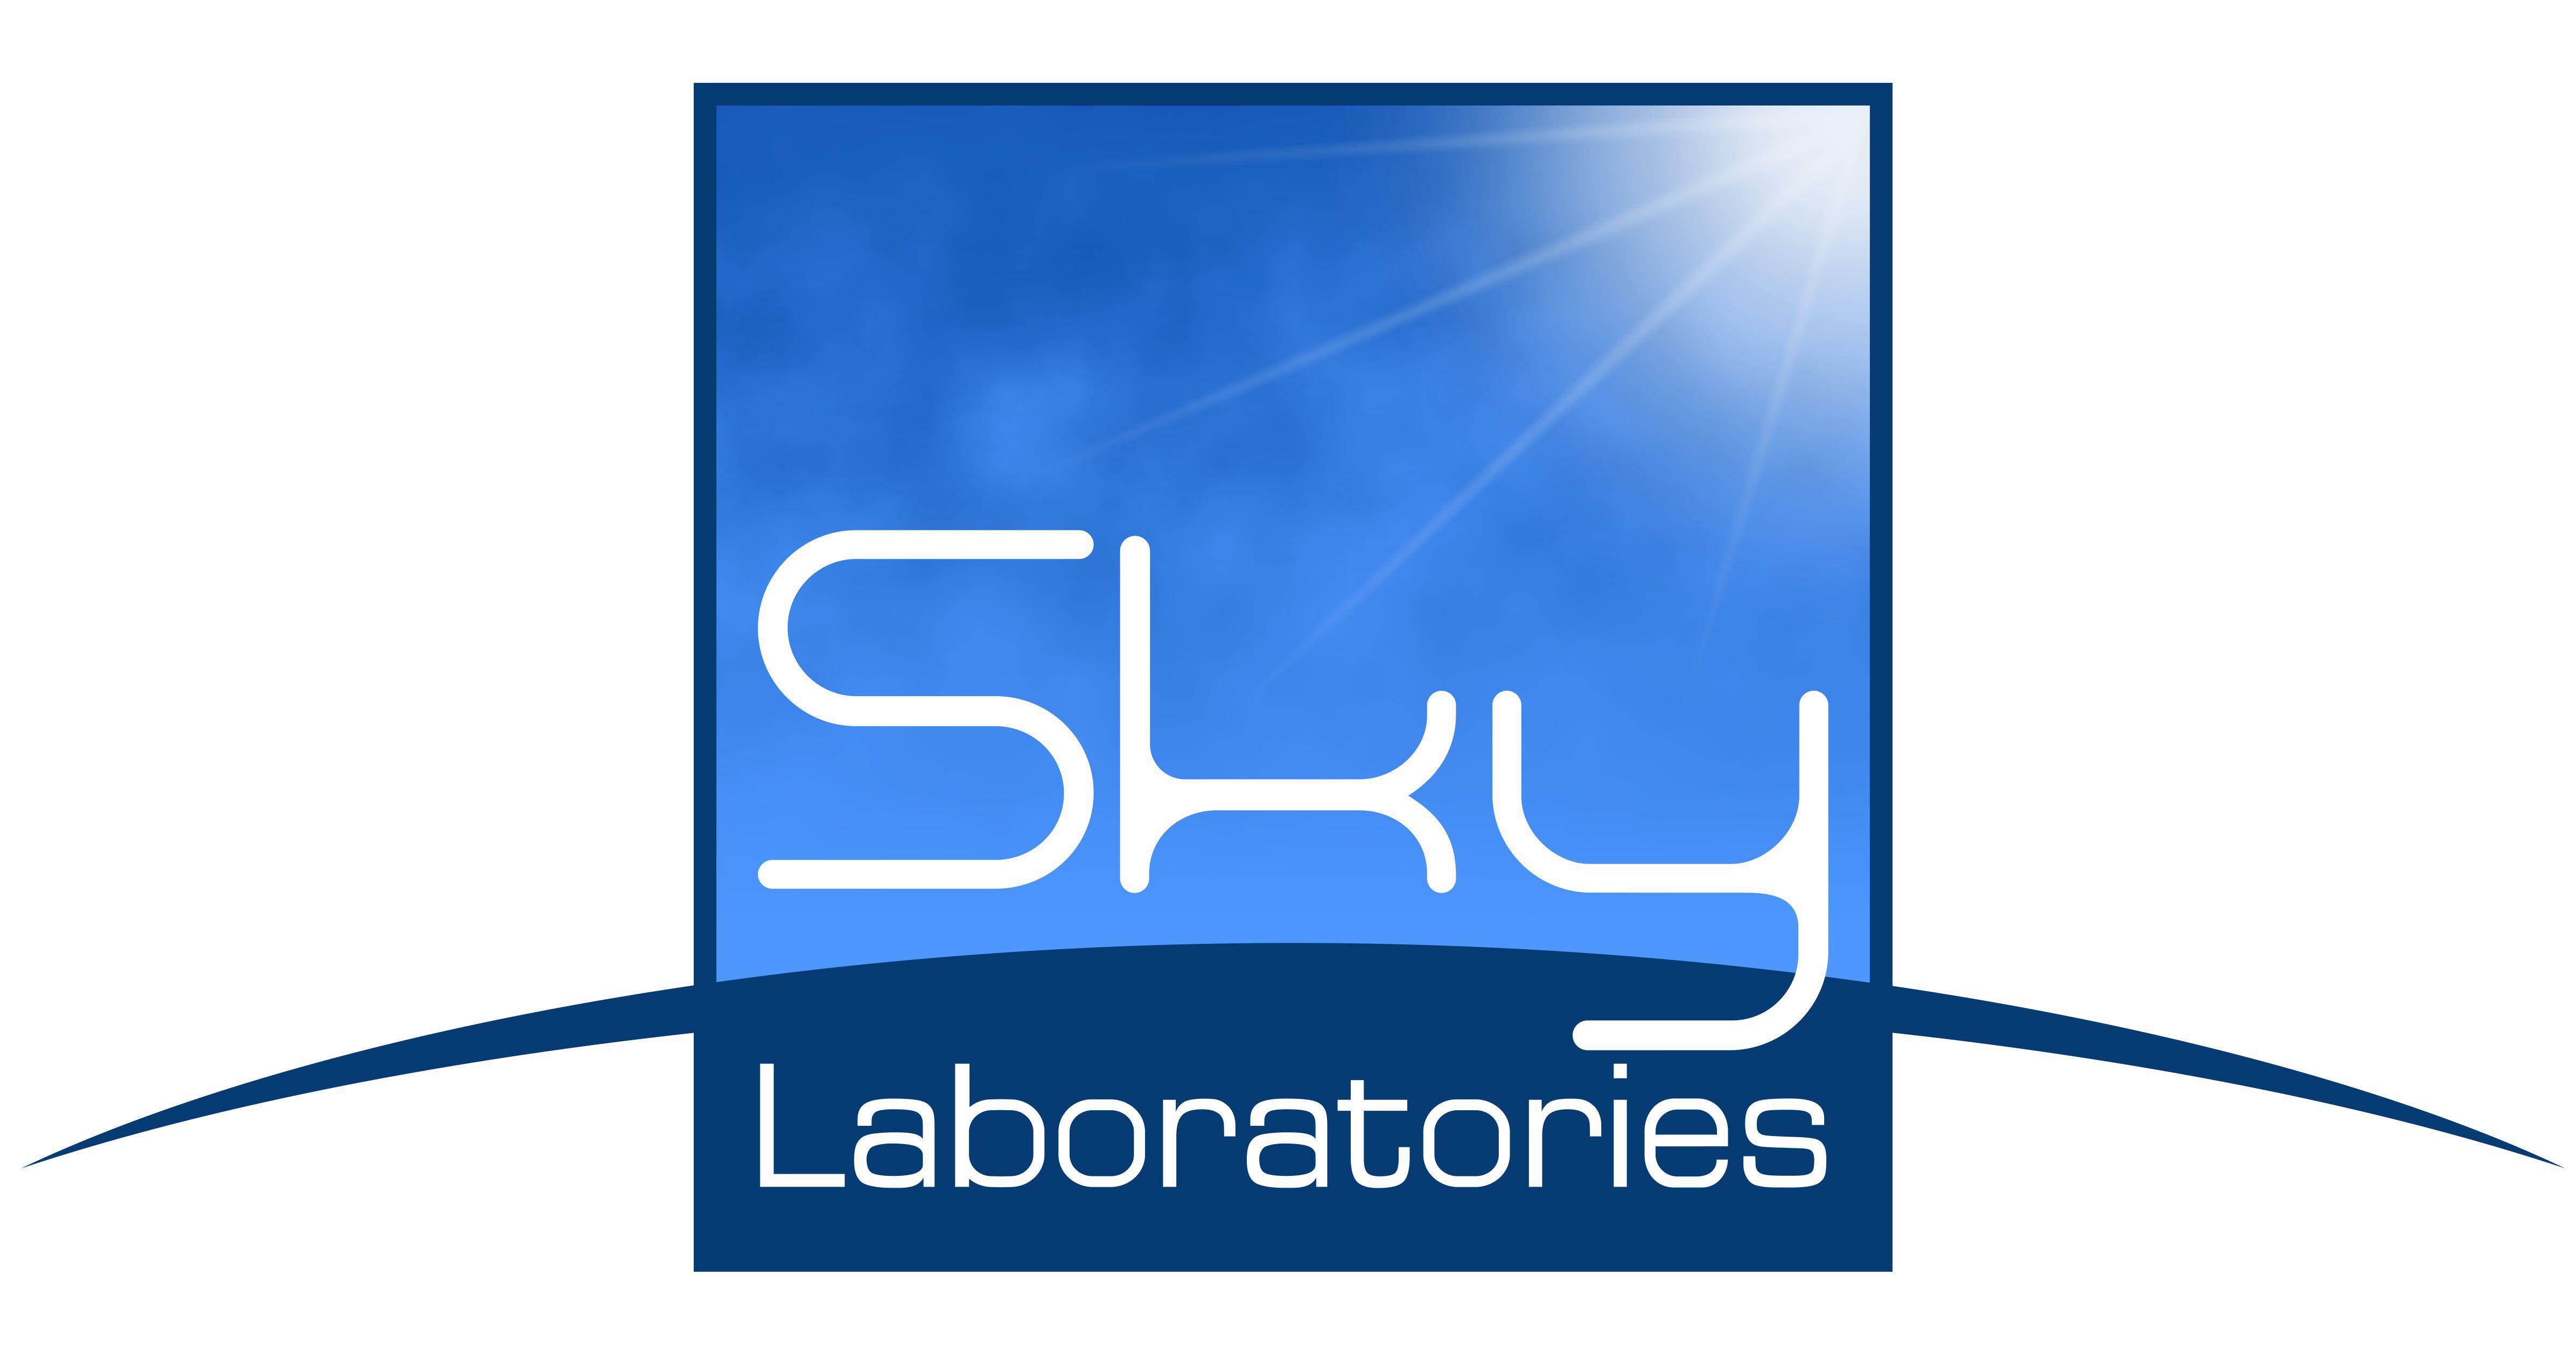 SKY Laboratories